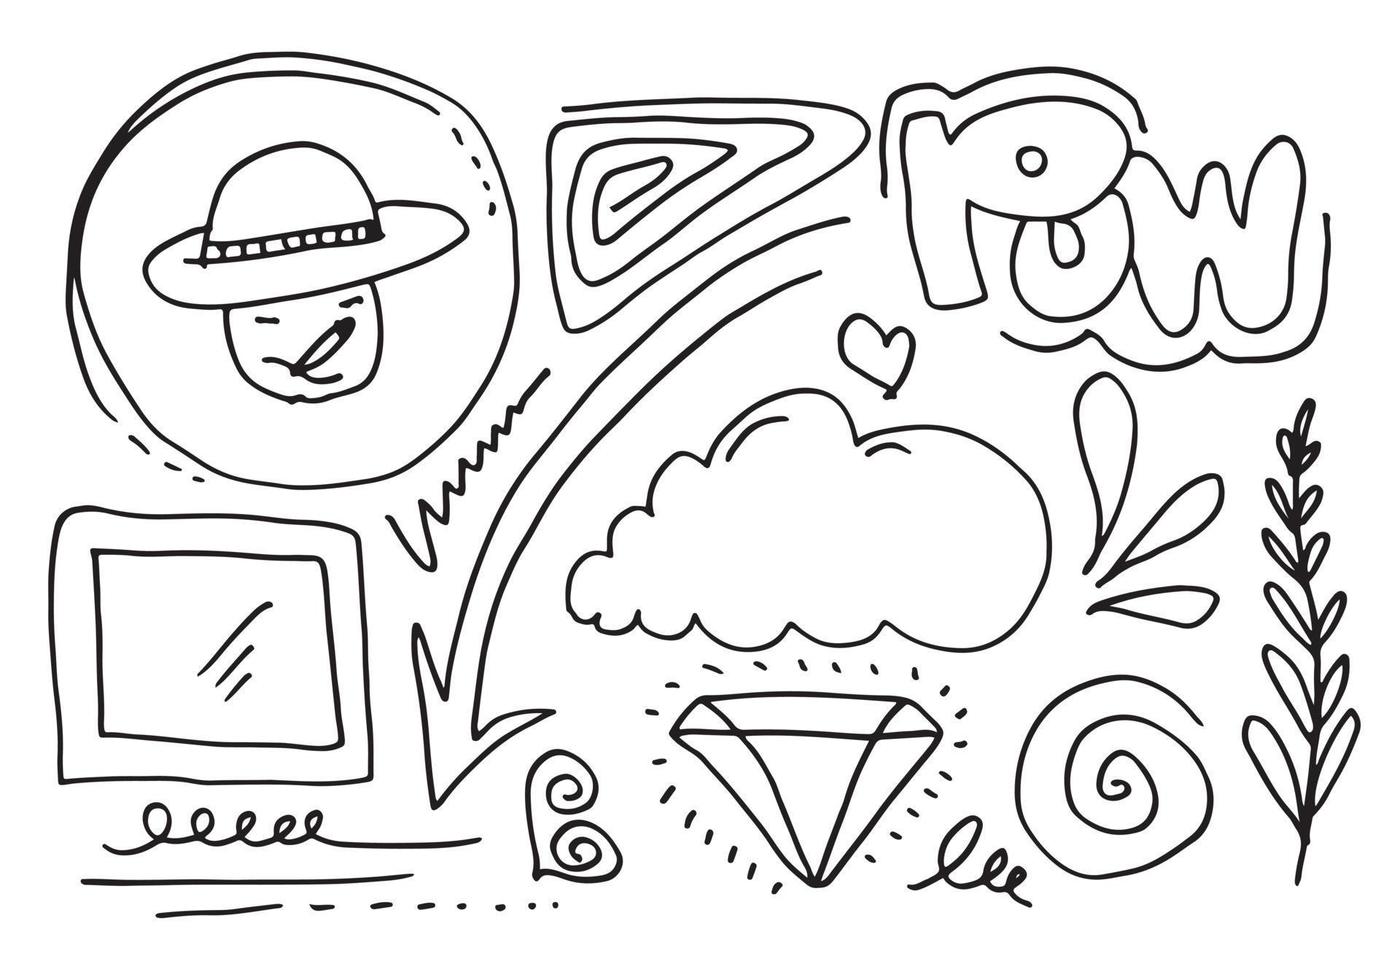 elemento set disegnato a mano, nero su sfondo bianco. emoticon, cornice, nuvole, freccia, cuore, foglia, fruscii, picchi, enfasi, vortice, cuore, per concept design. vettore